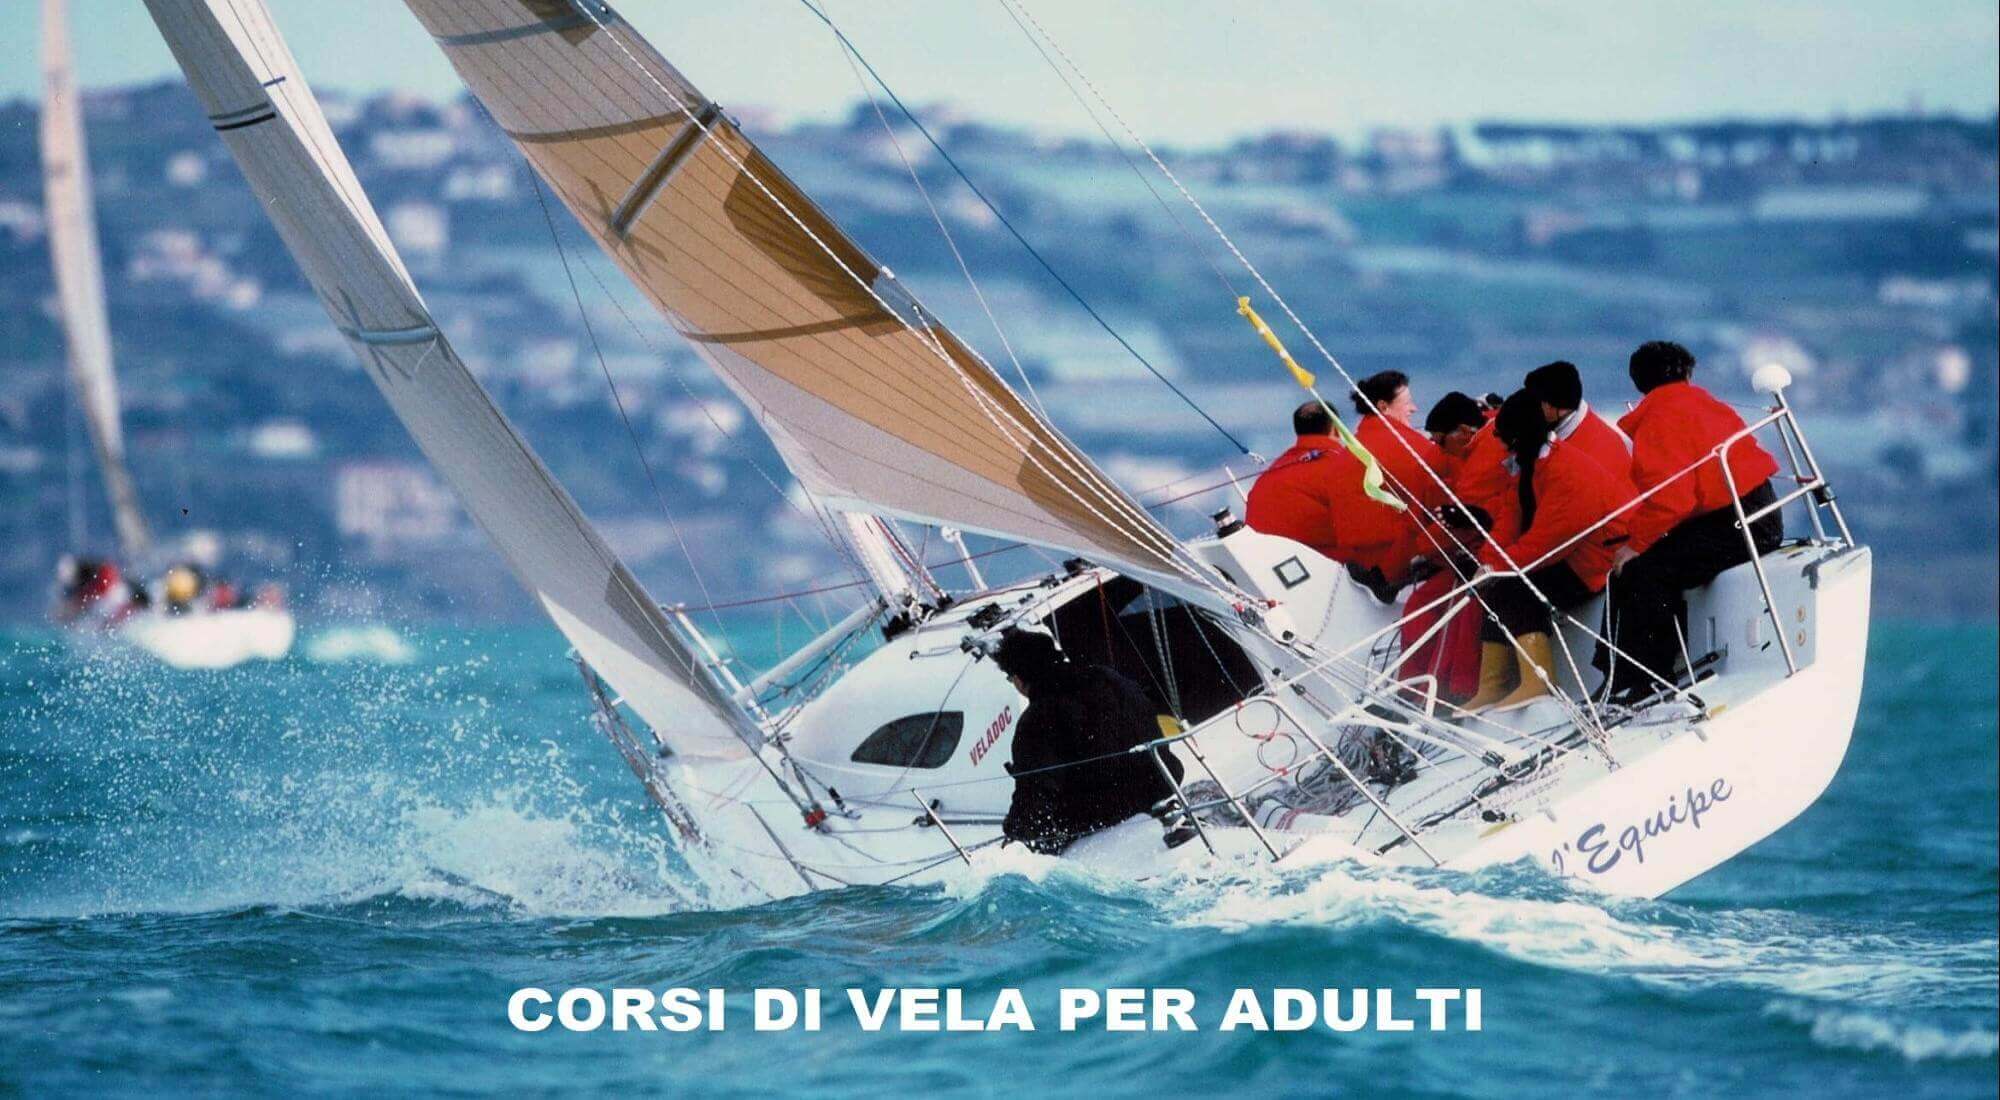 Scuola Di Vela In Liguria A Sanremo Corsi Di Vela E Vacanze In Barca A Vela